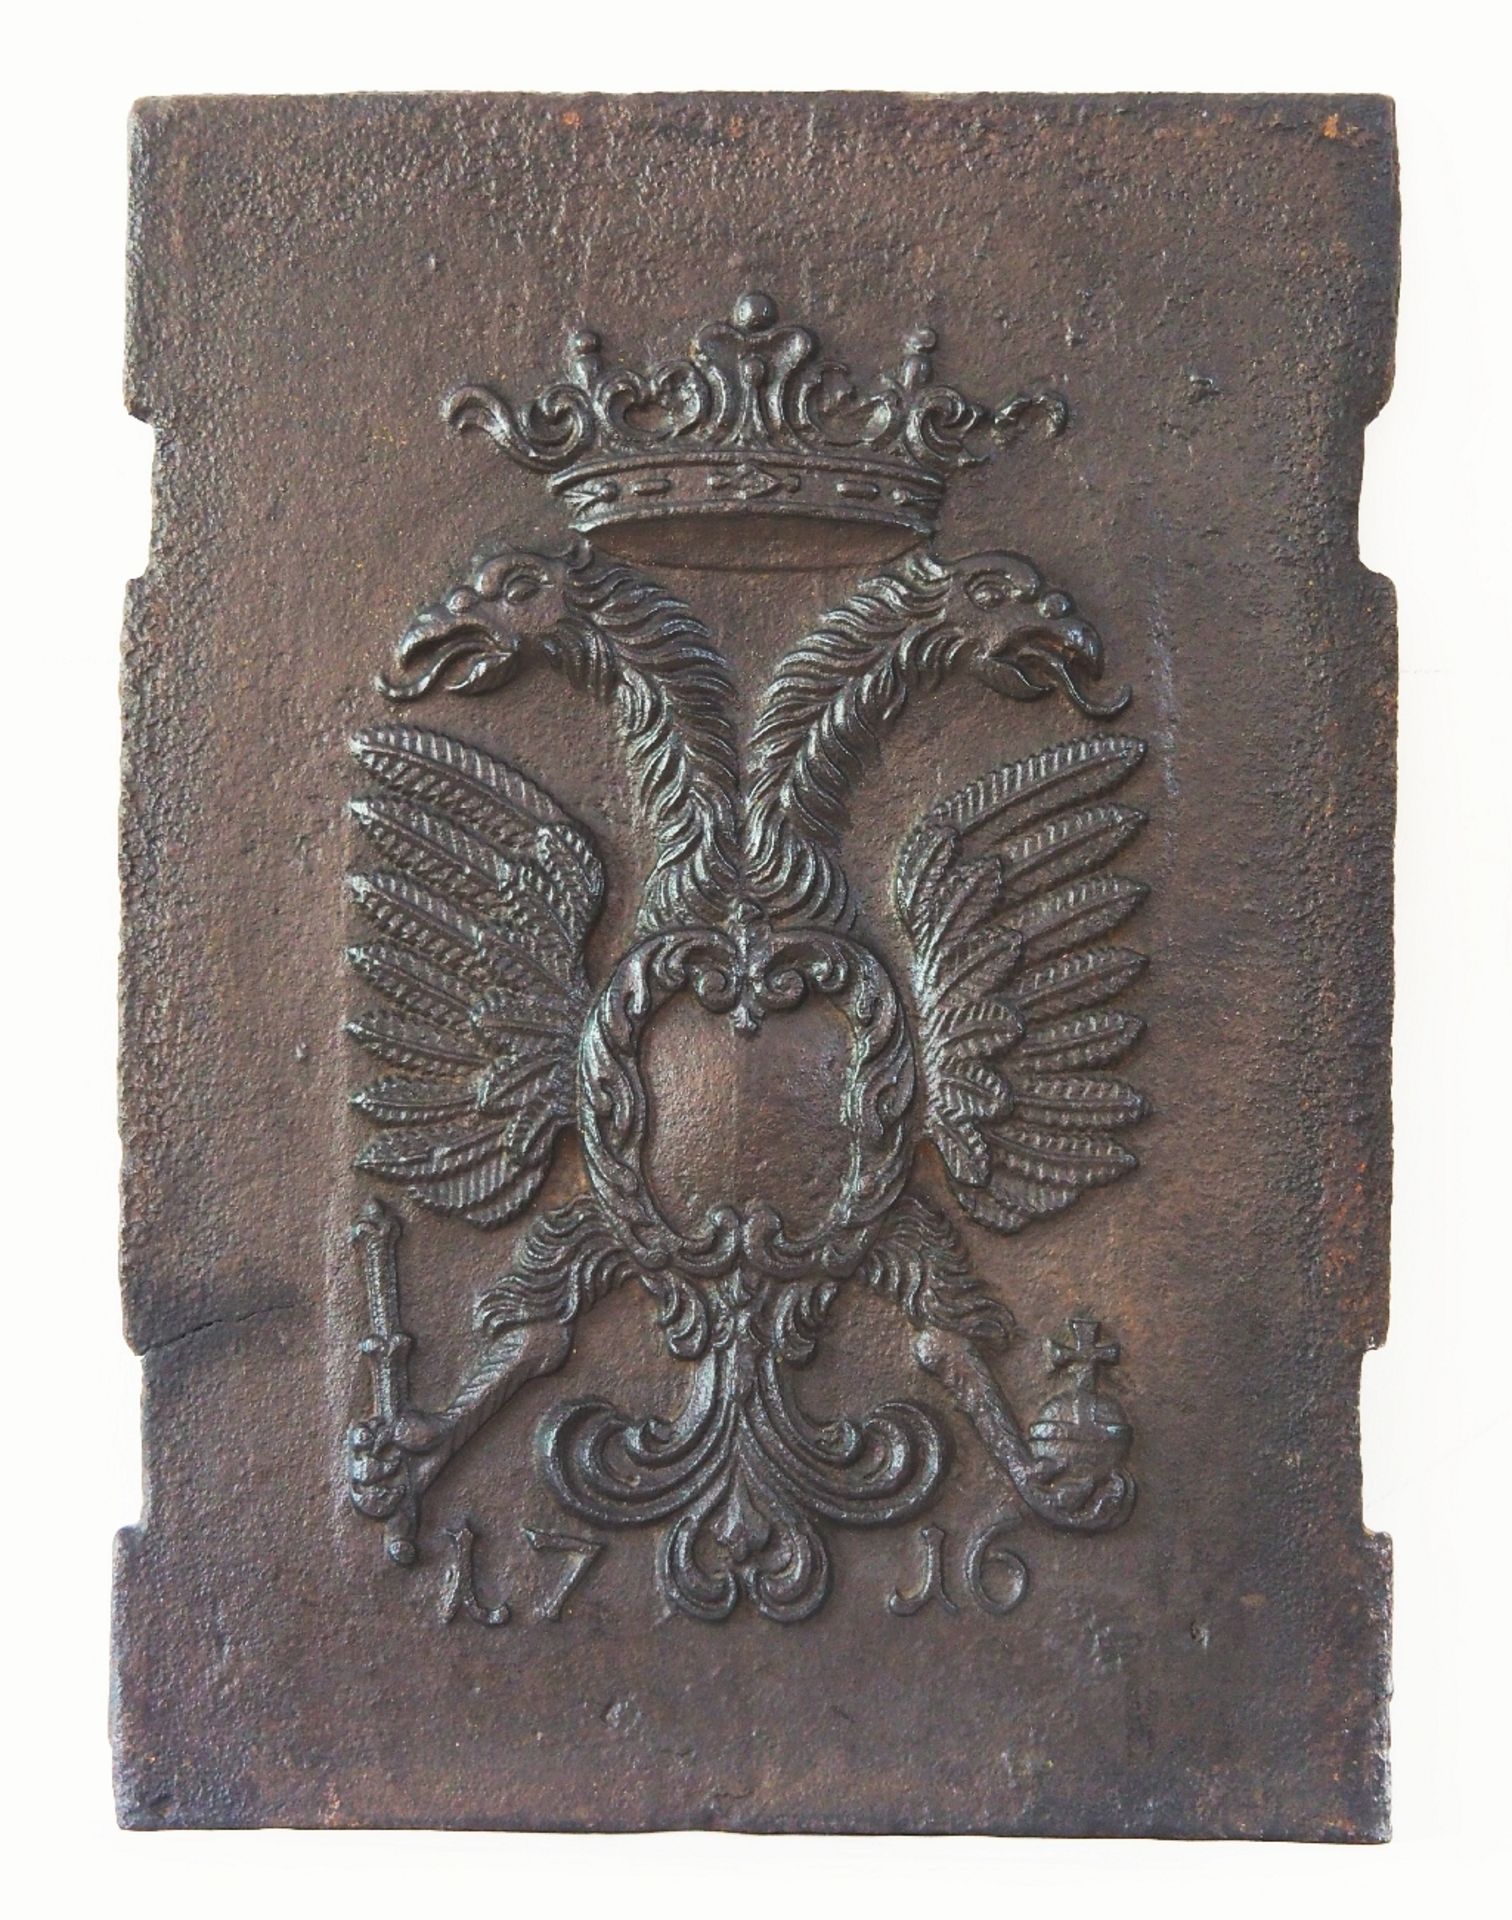 Gusseiserne Kaminplatte, bekrönter Doppeladler mit freier Kartusche, unten mit Jahreszahl 1716.